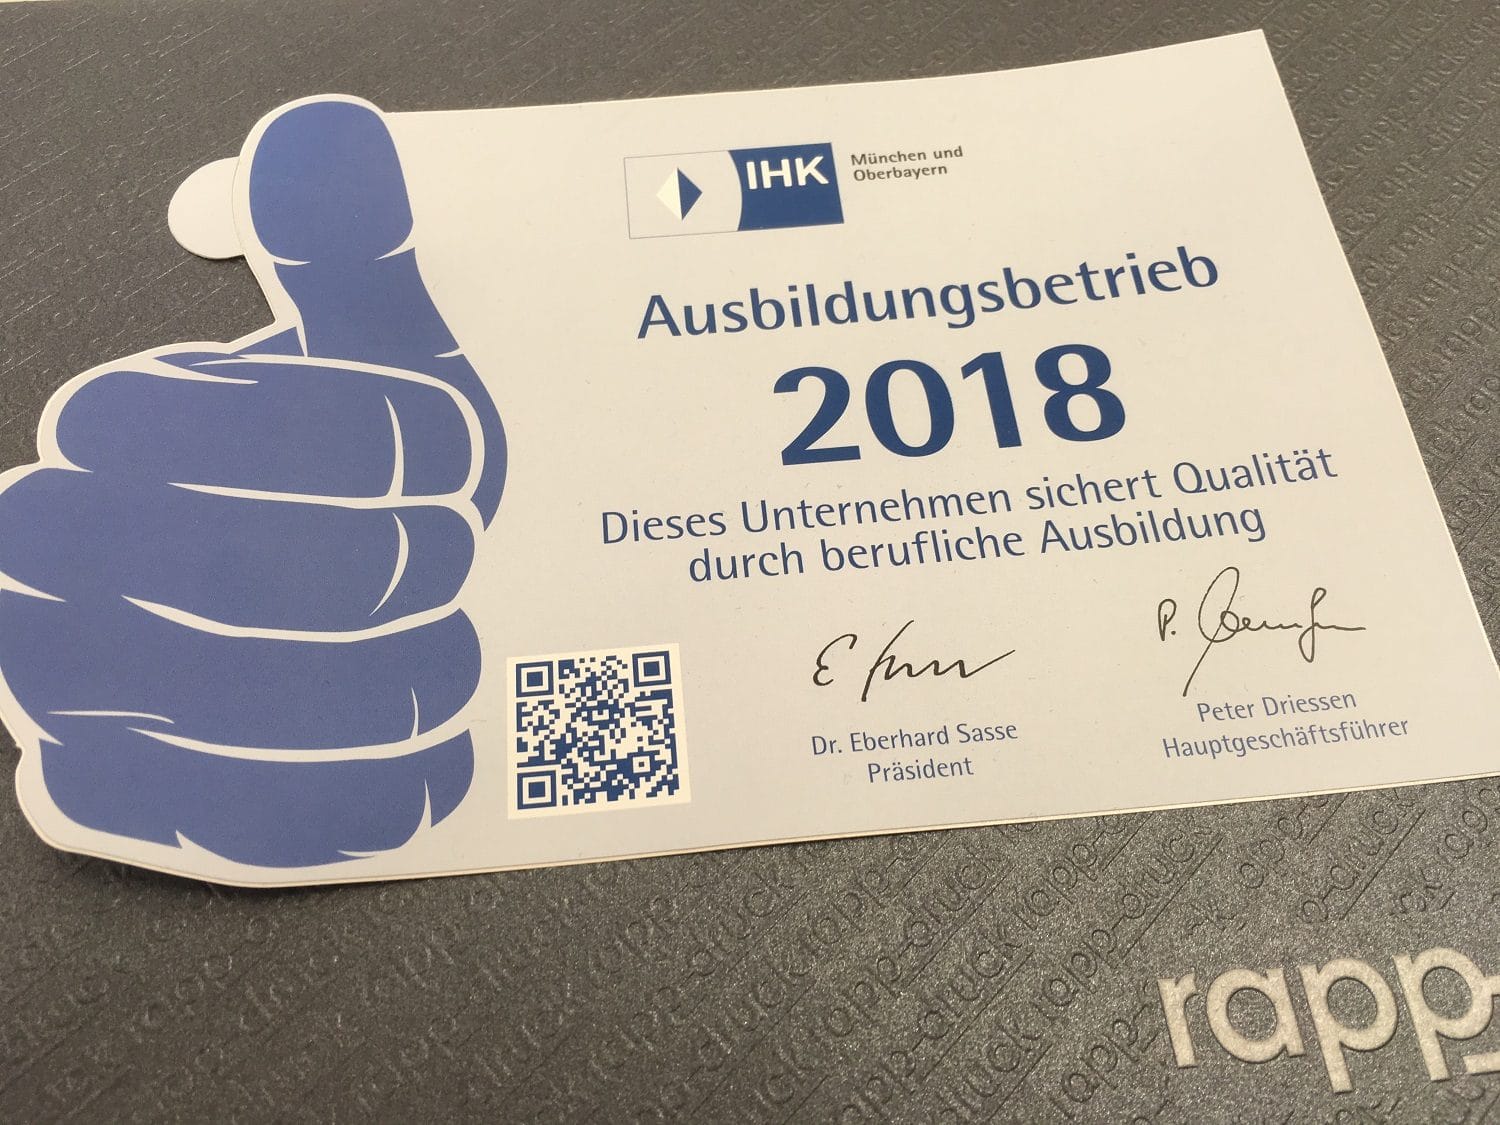 Sticker der IHK "Ausbildungsbetrieb 2018" für die Druckerei Rapp-Druck GmbH